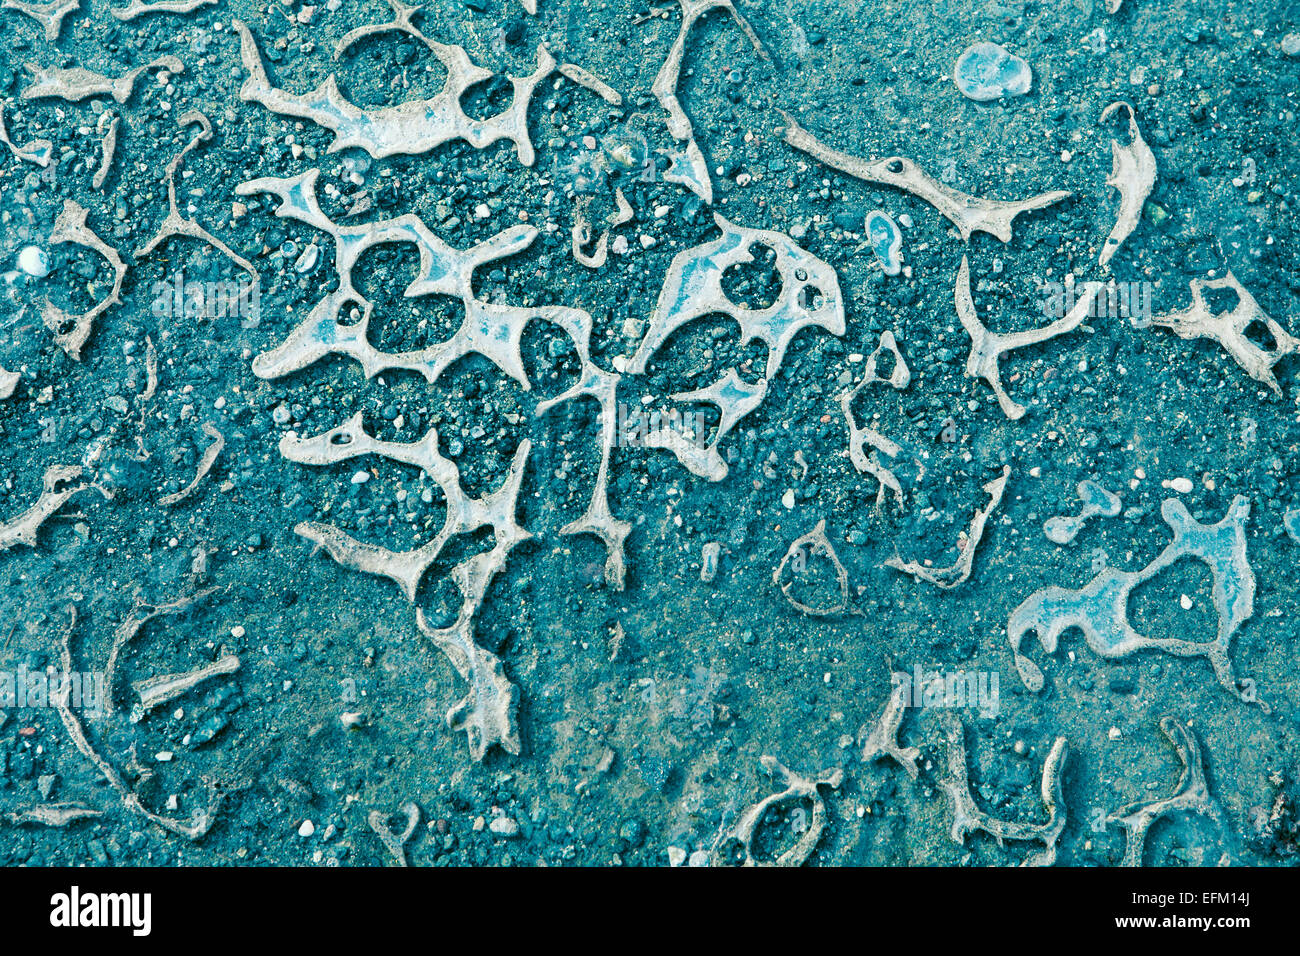 Zusammenfassung von Eis in Reifenspuren auf einem Feldweg mit Blaufärbung für einen einzigartigen Look gebildet. Stockfoto